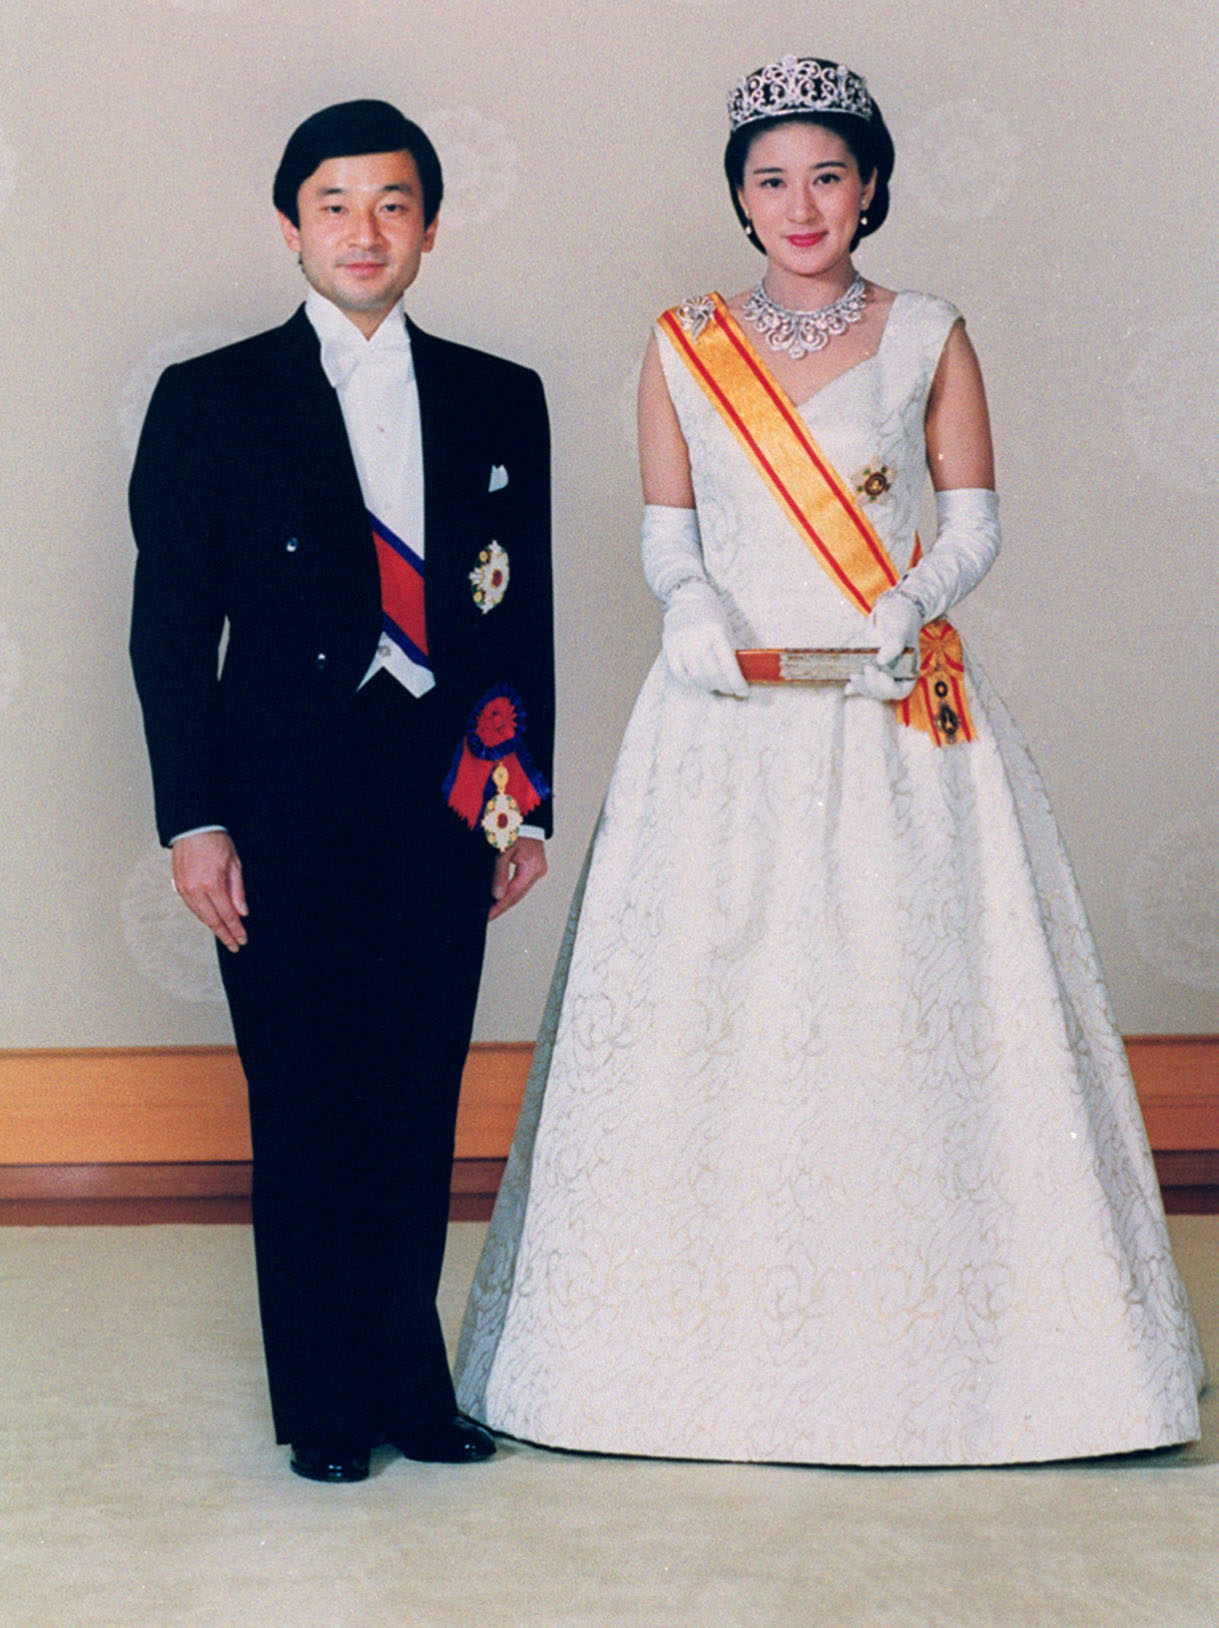 結婚を報告する「朝見の儀」を終え、記念撮影される天皇、皇后両陛下。皇后さま着用のローブデコルテは森英恵さんのデザイン＝1993年6月9日、宮殿・竹の間（宮内庁提供）（共同）